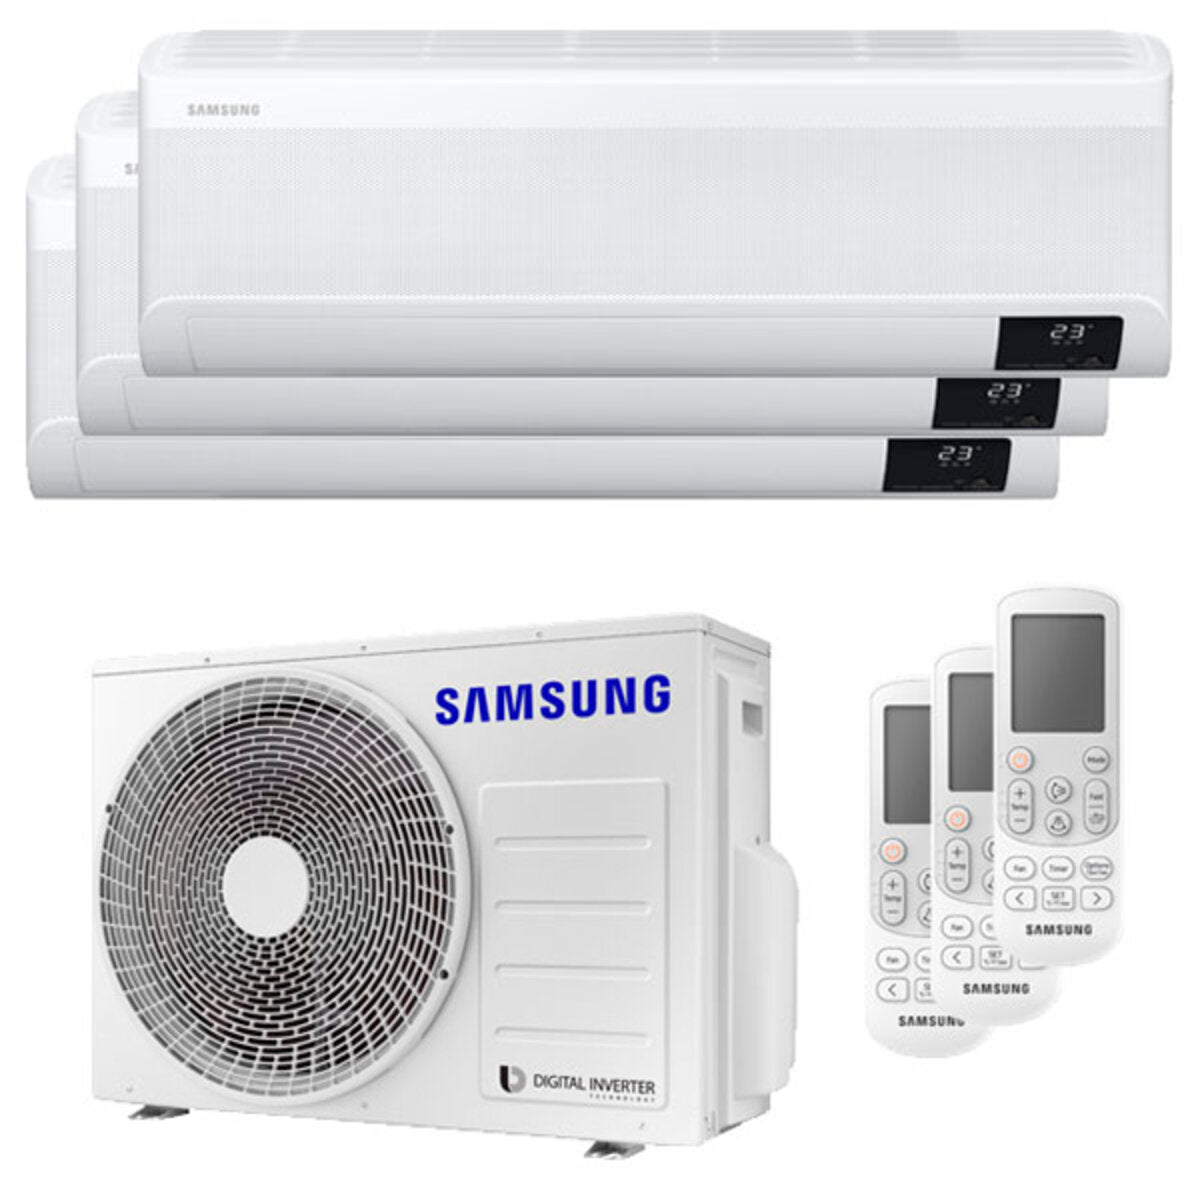 Samsung windfree Avant Klimaanlage Trial Split 9000 + 9000 + 9000 BTU Inverter A++ WLAN Außengerät 5,2 kW